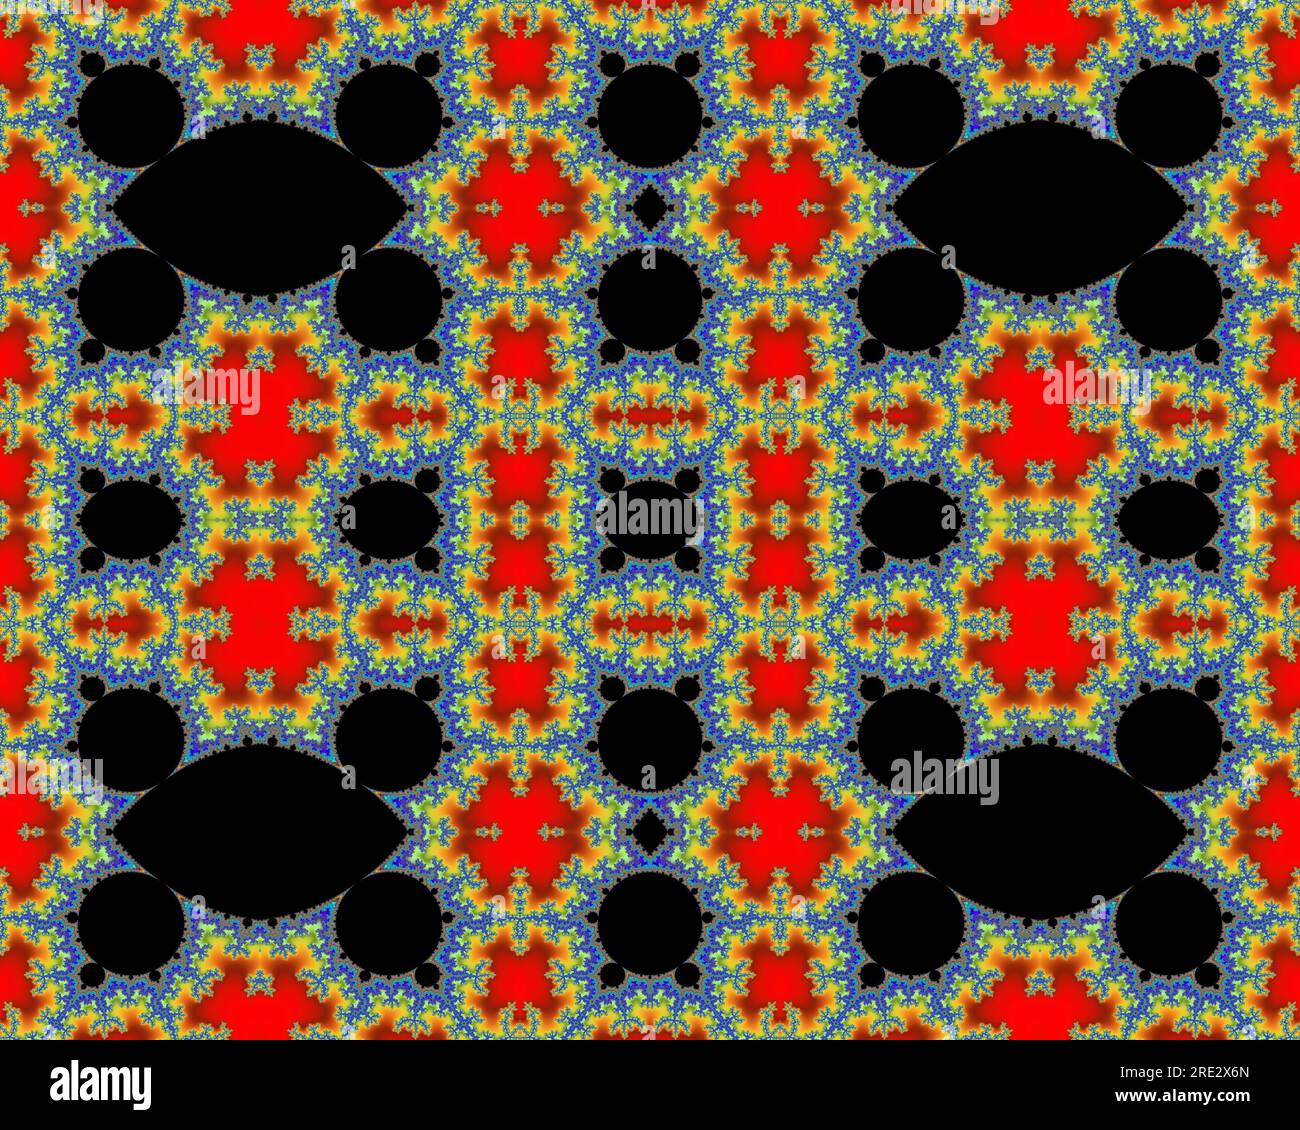 Julia ha impostato l'immagine frattale Mandelbrot, il pattern di simmetria dell'arte digitale astratta Foto Stock